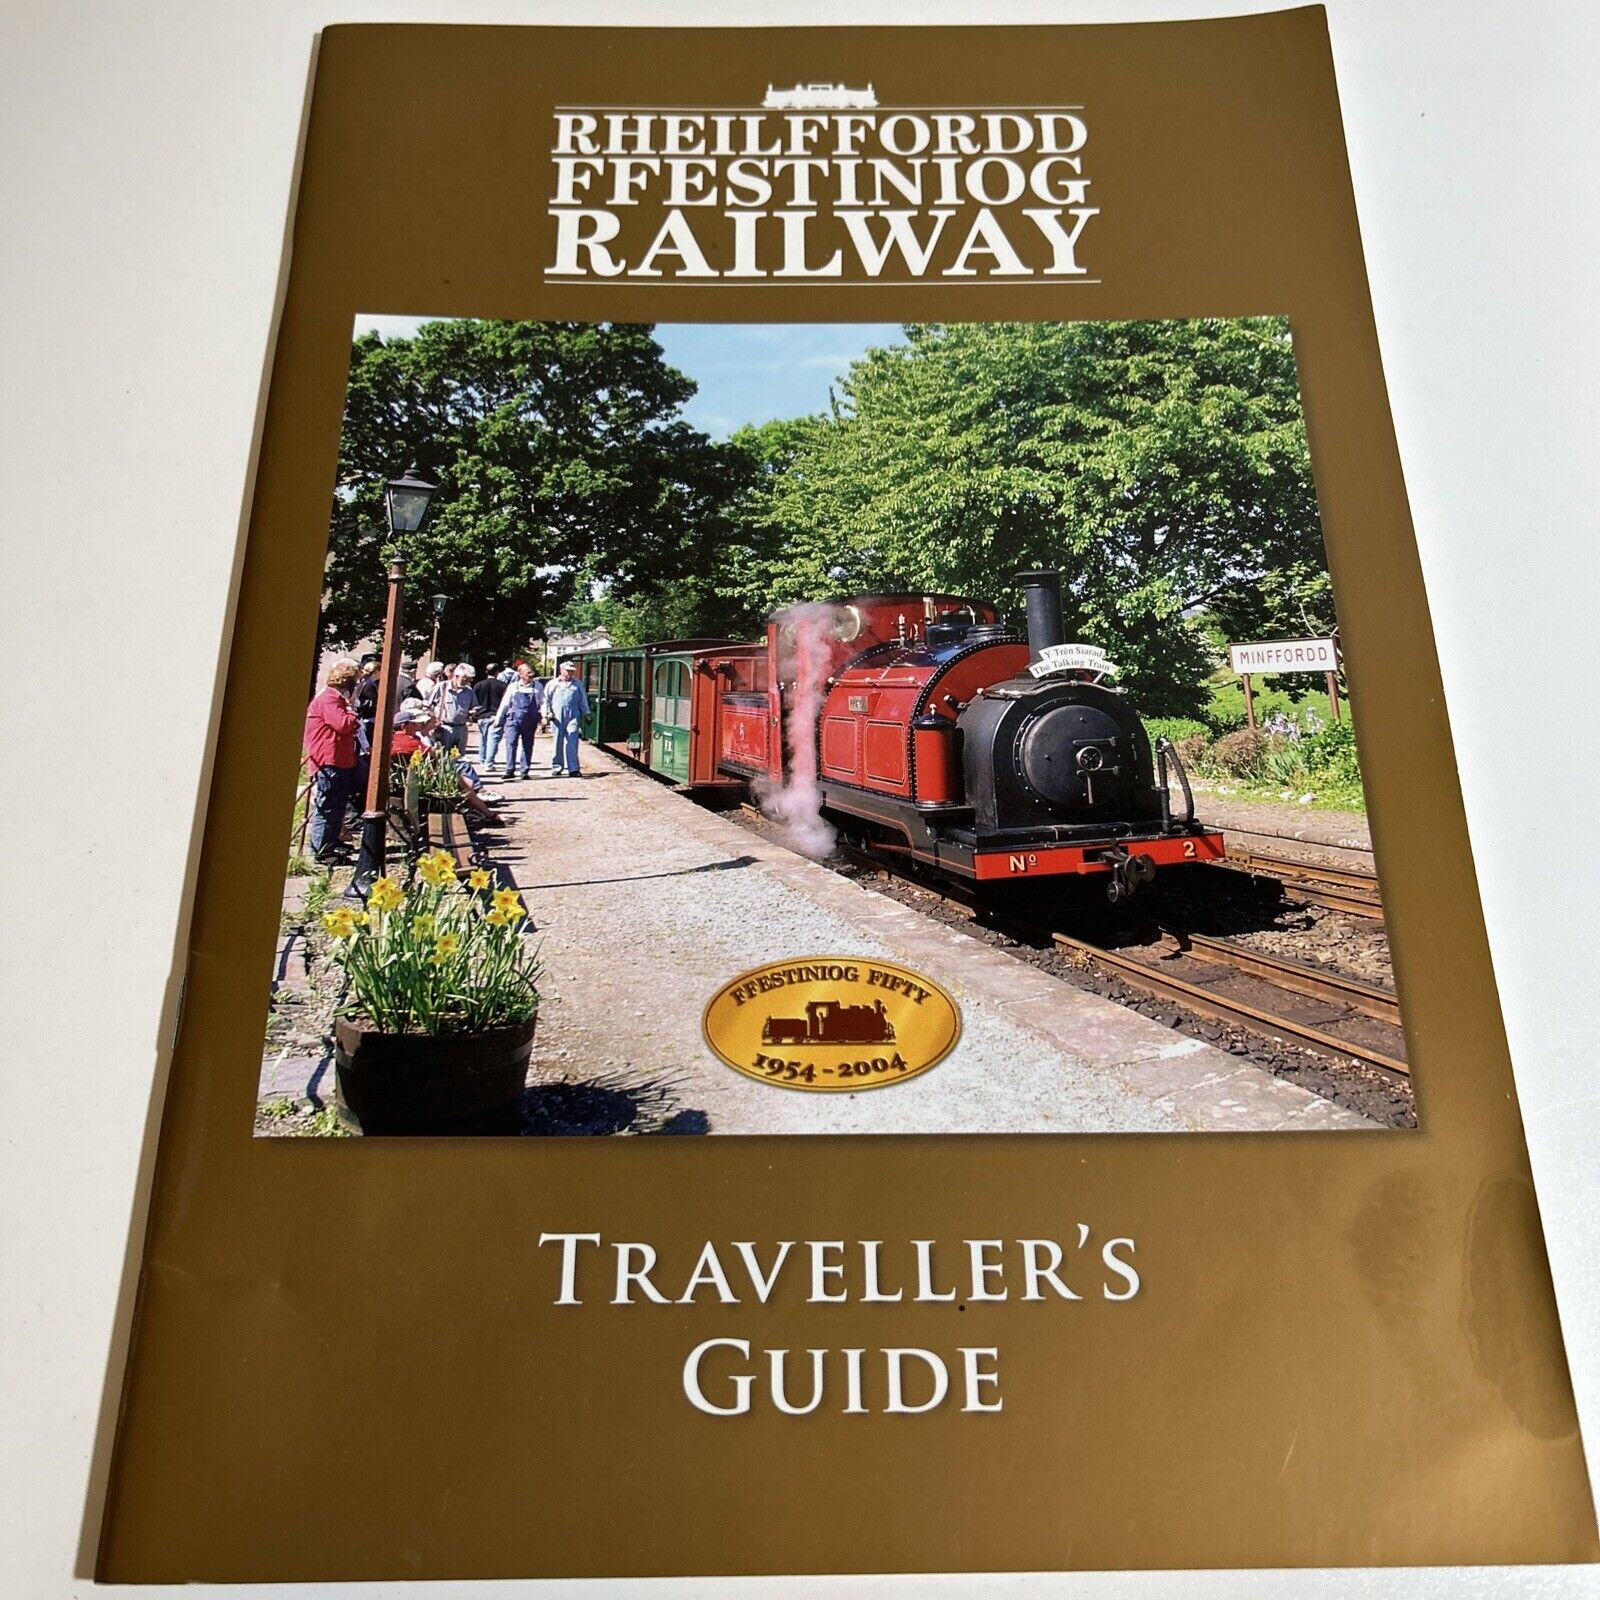 RHEILFFORDD FFESTINIOG RAILWAY  Travellers Guide, 2004, Wales. Illus. Map. RR.